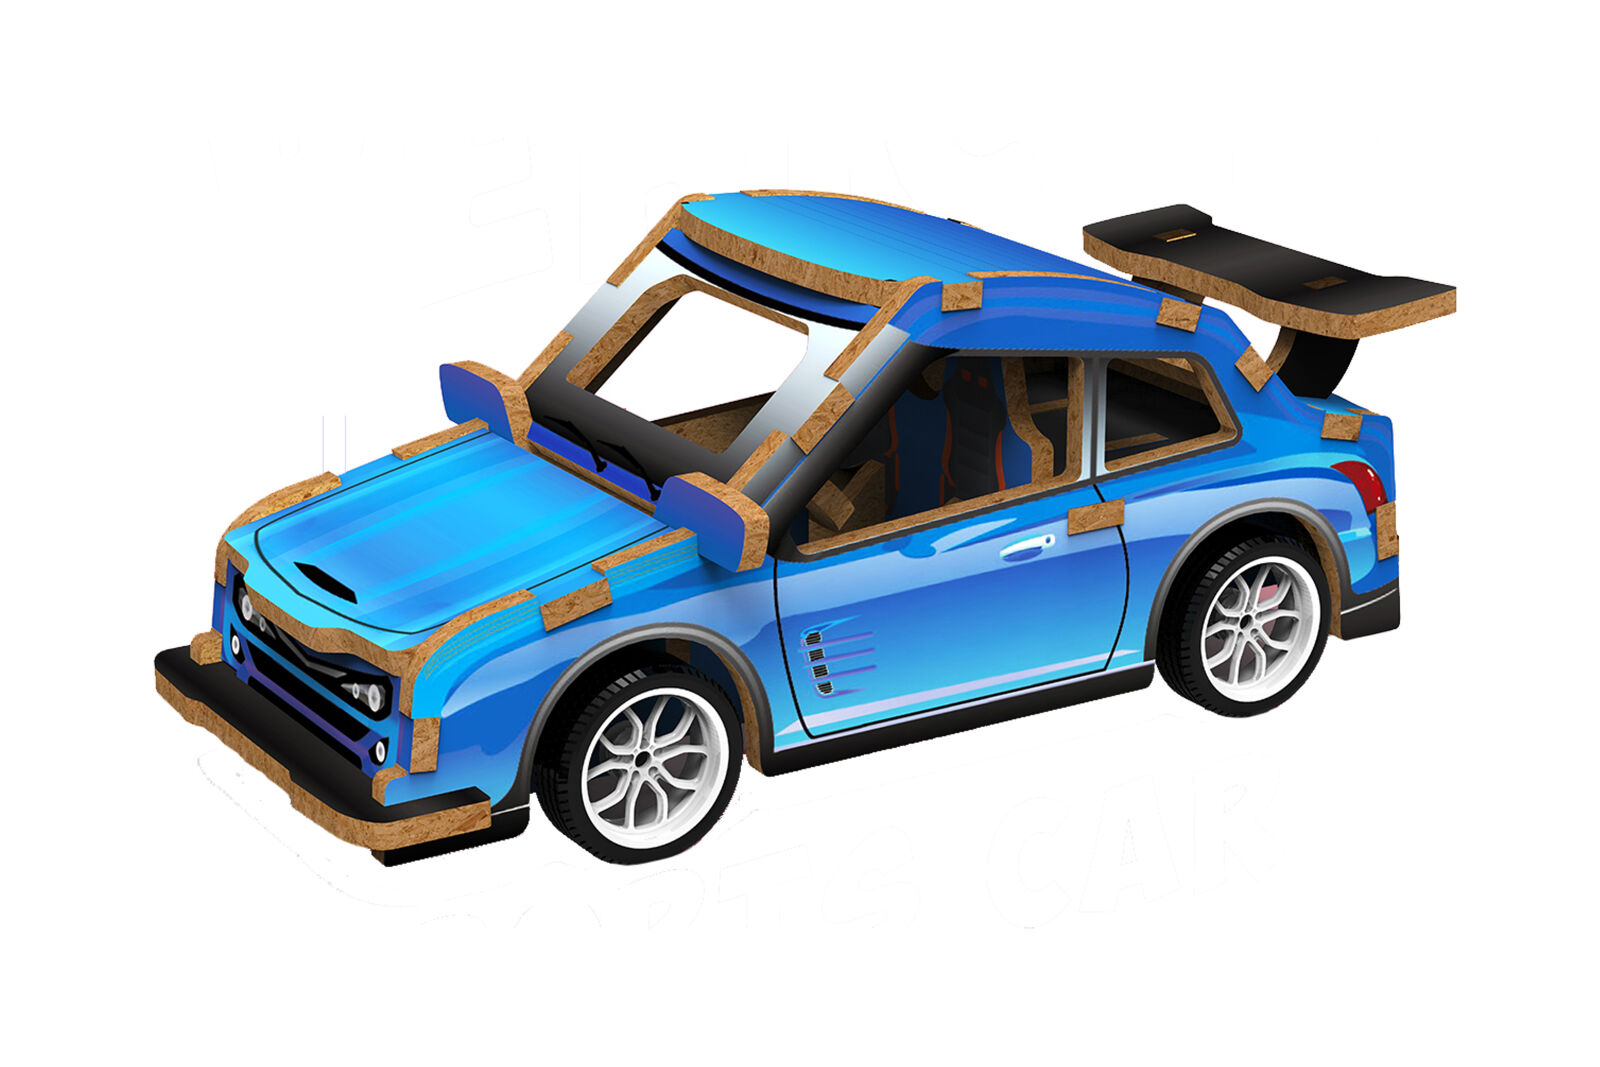 3D puzzle dřevěné - Závodní auto 13 cm